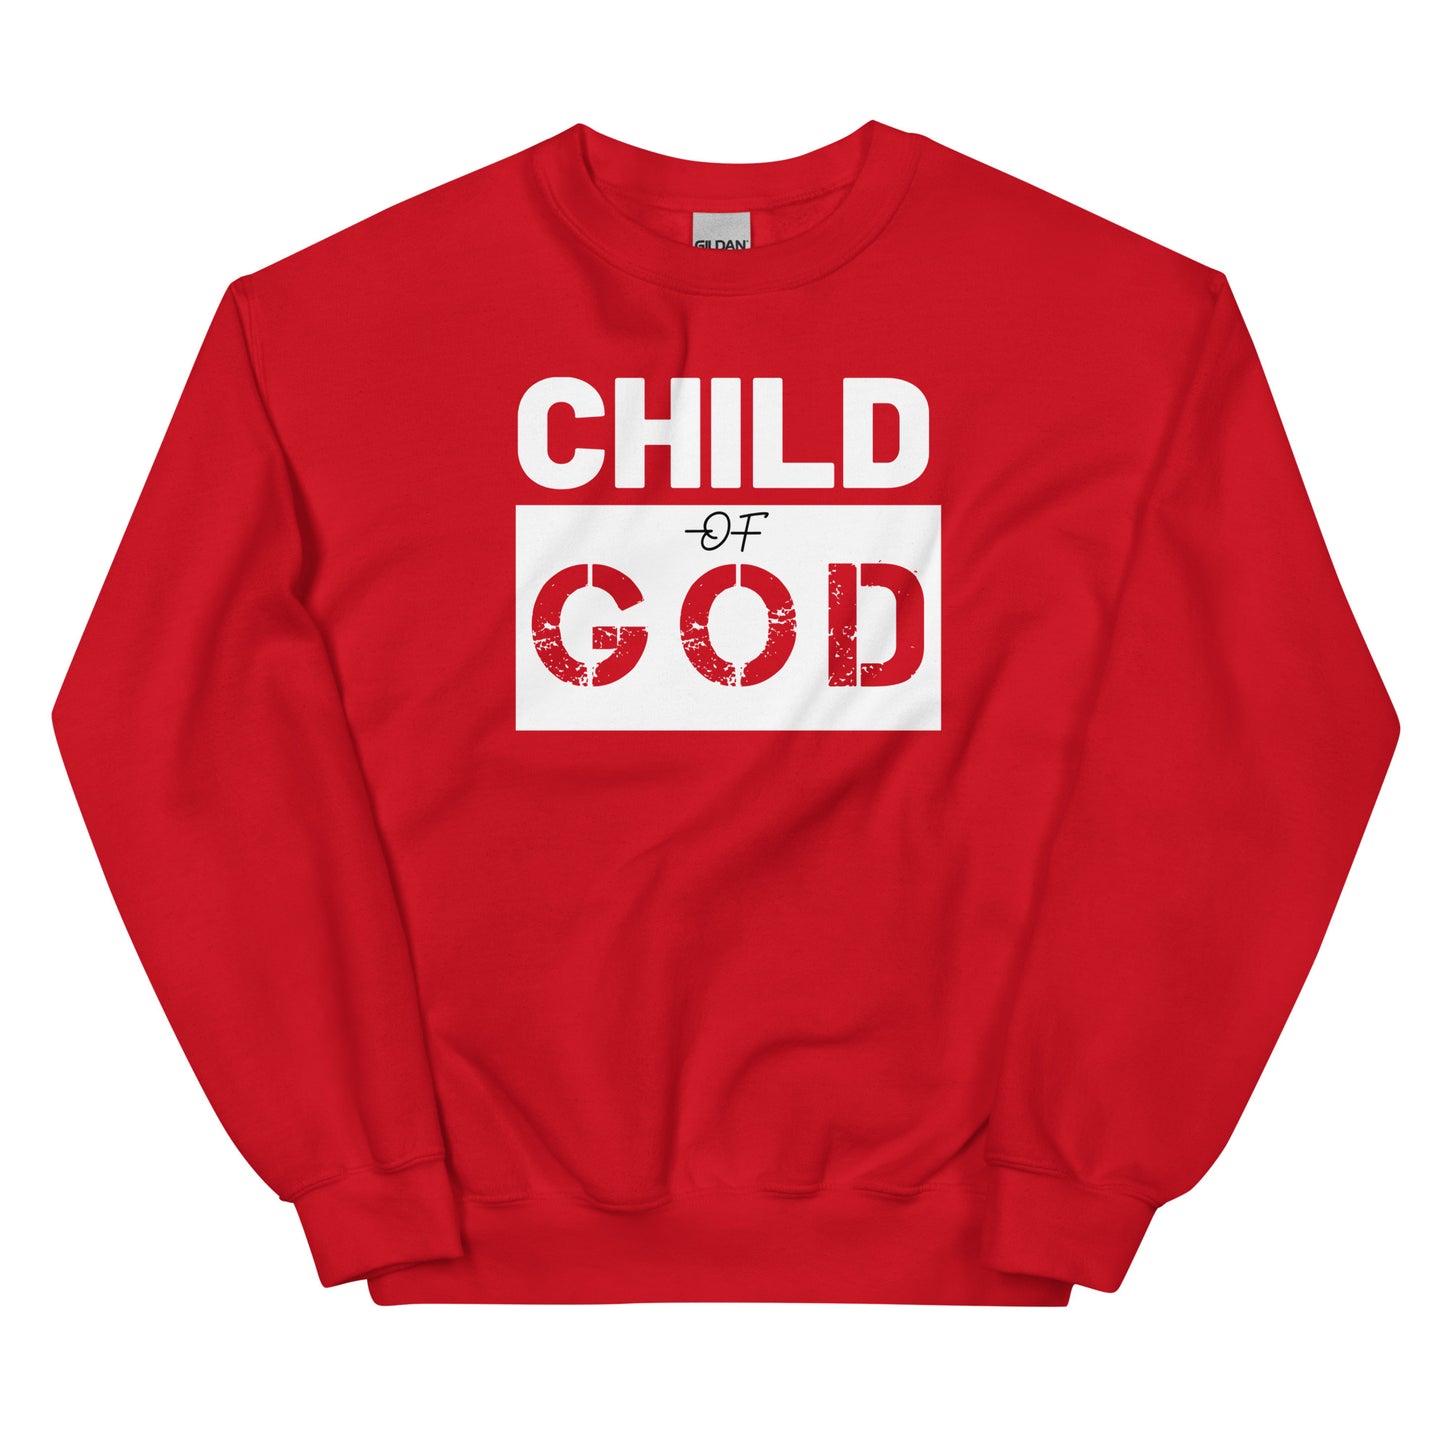 Christian sweatshirt